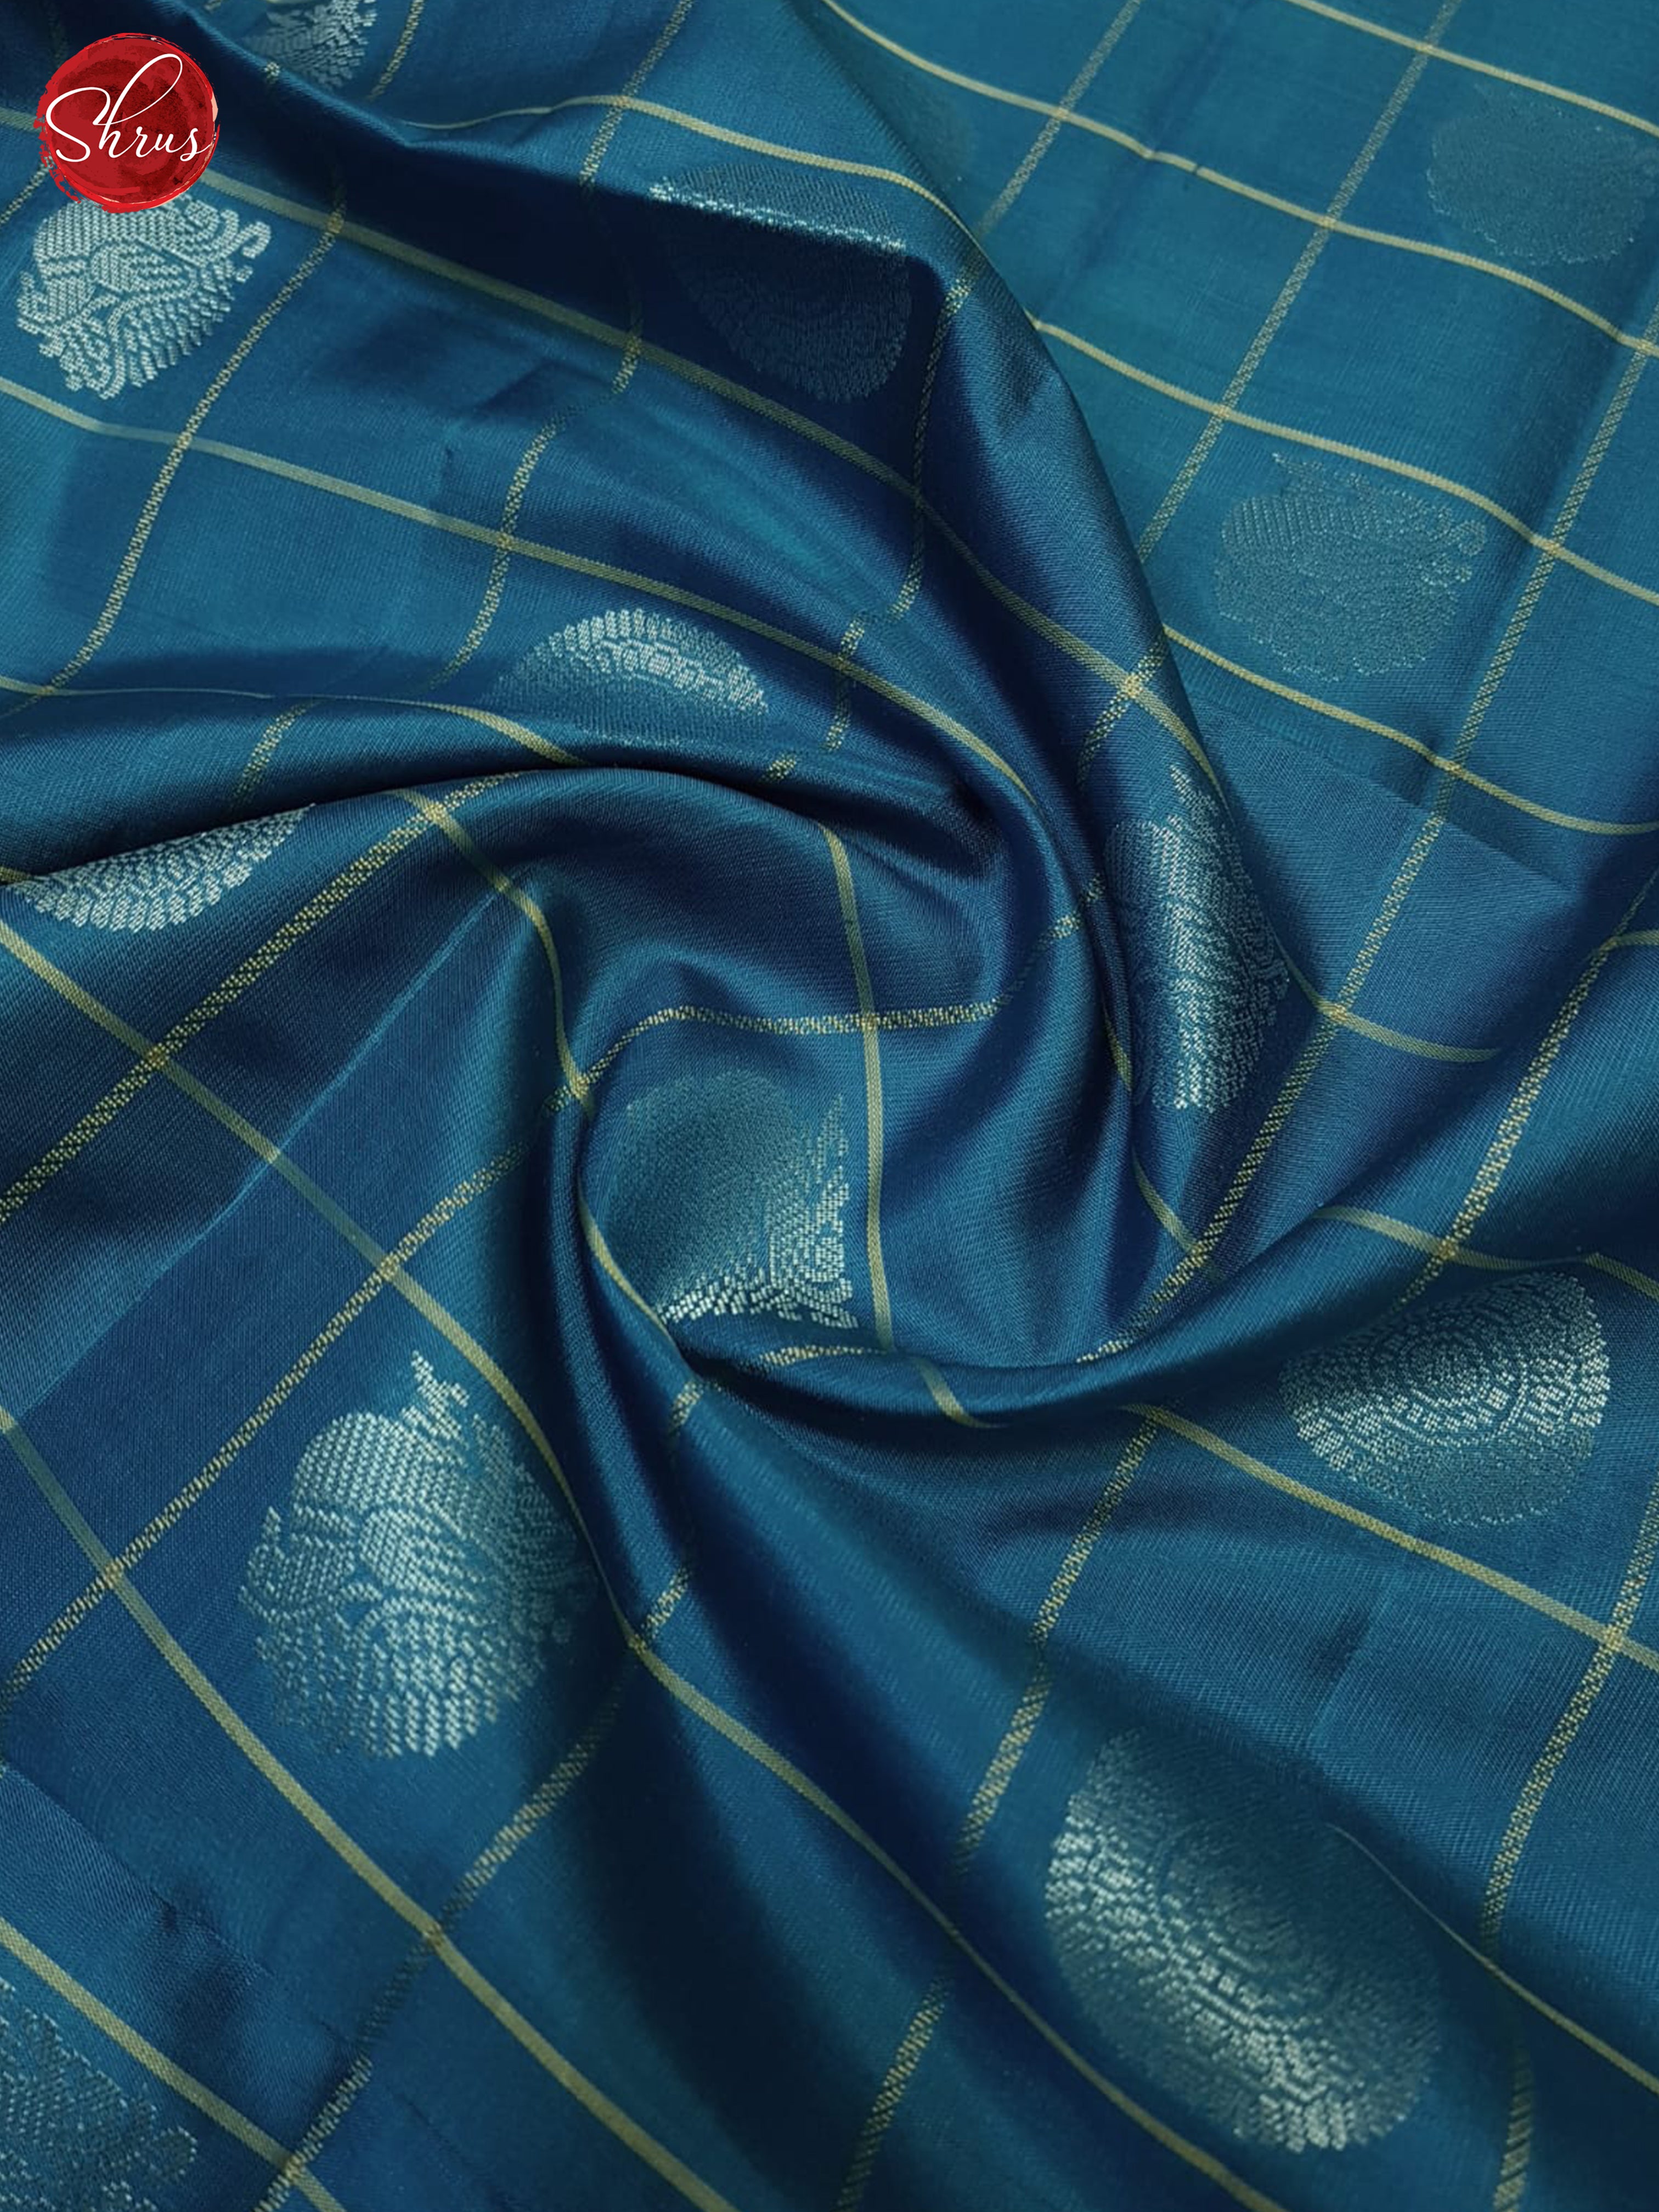 Blue And Elachi Green- Soft Silk Saree - Shop on ShrusEternity.com